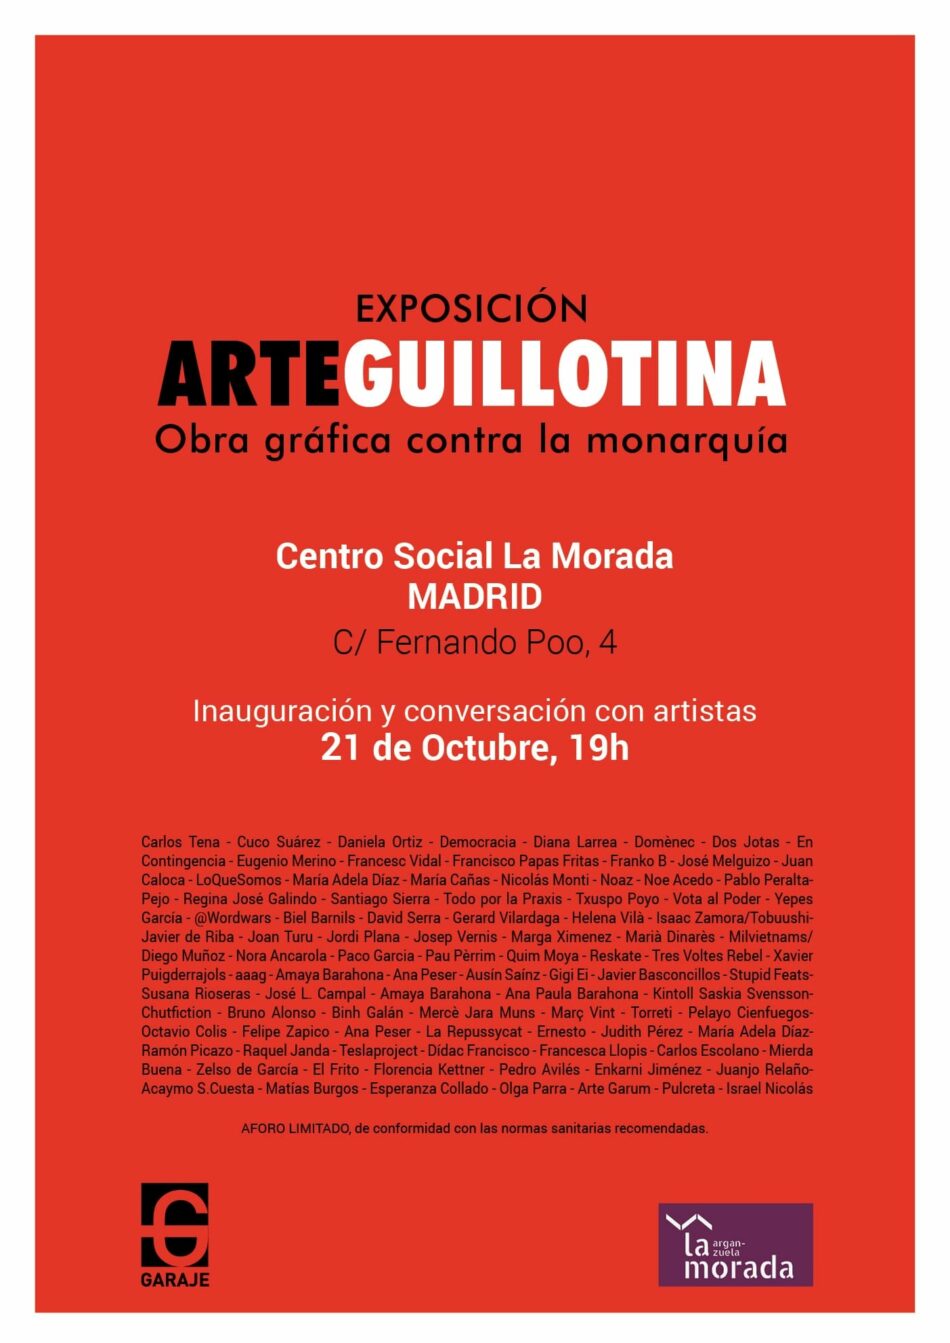 ArteGuillotina en Madrid: una exposición antimonárquica